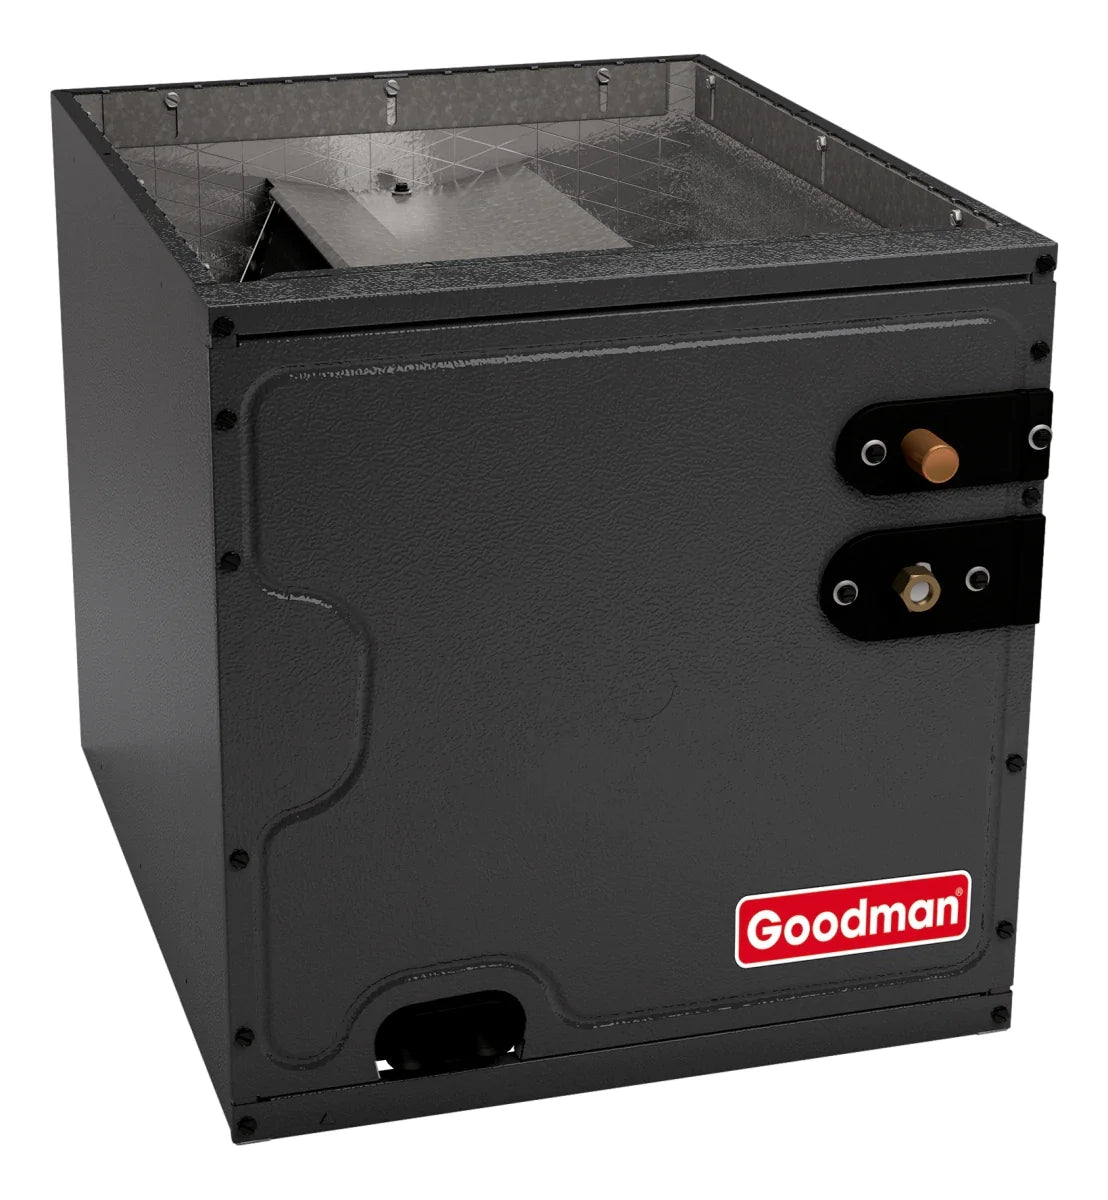 Goodman 2.5 TON 15 SEER2 Downflow AC system with 80% AFUE 80k BTU 2 stage Low NOx Furnace (GSXM403010, CAPTA3626B4, GCVC800803BX)